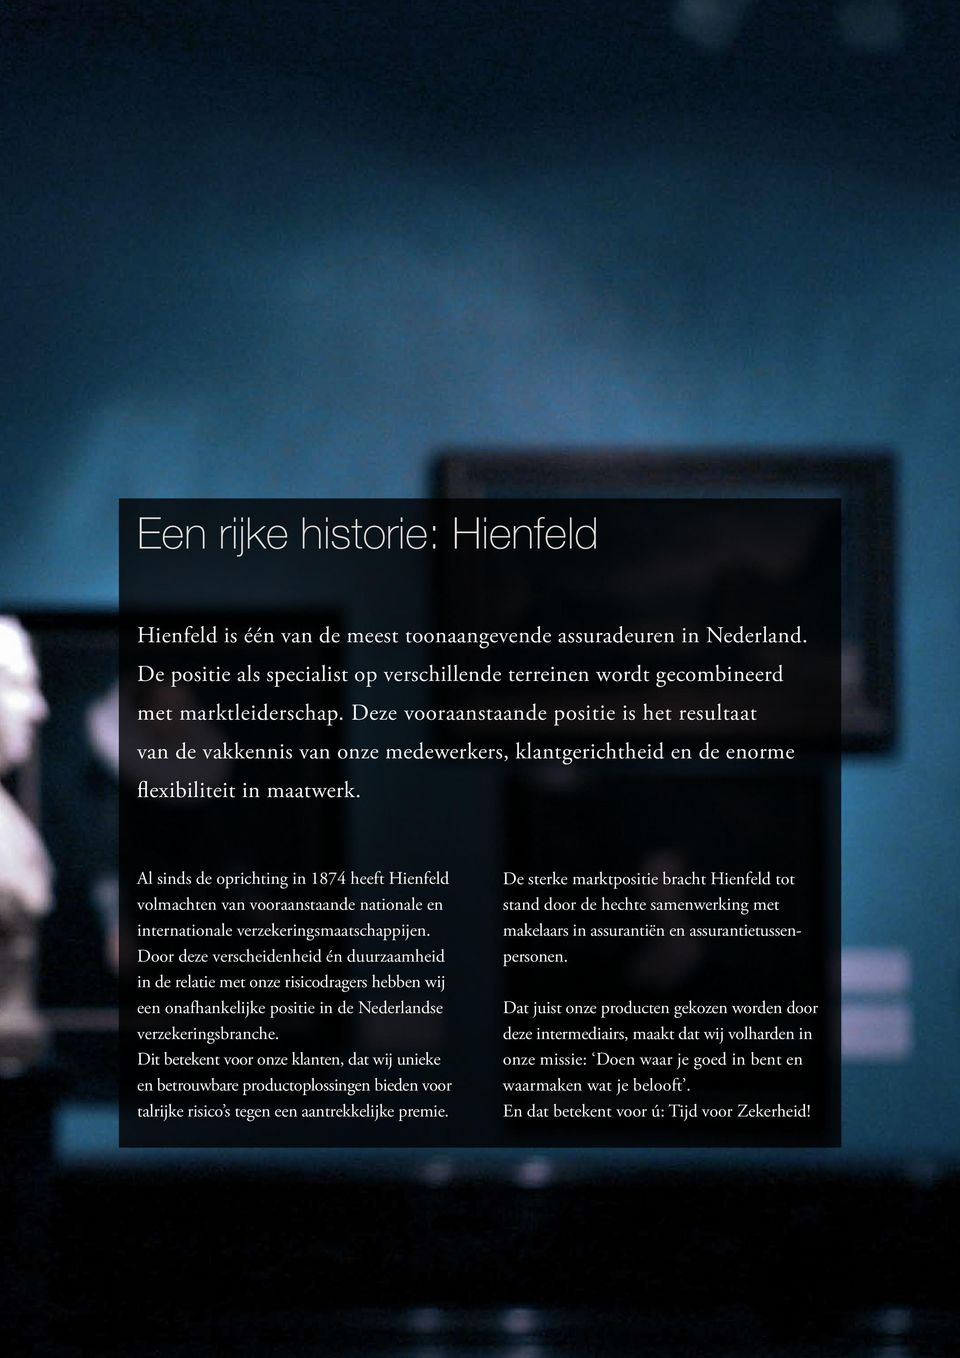 Al sinds de oprichting in 1874 heeft Hienfeld volmachten van vooraanstaande nationale en internationale verzekeringsmaatschappijen.